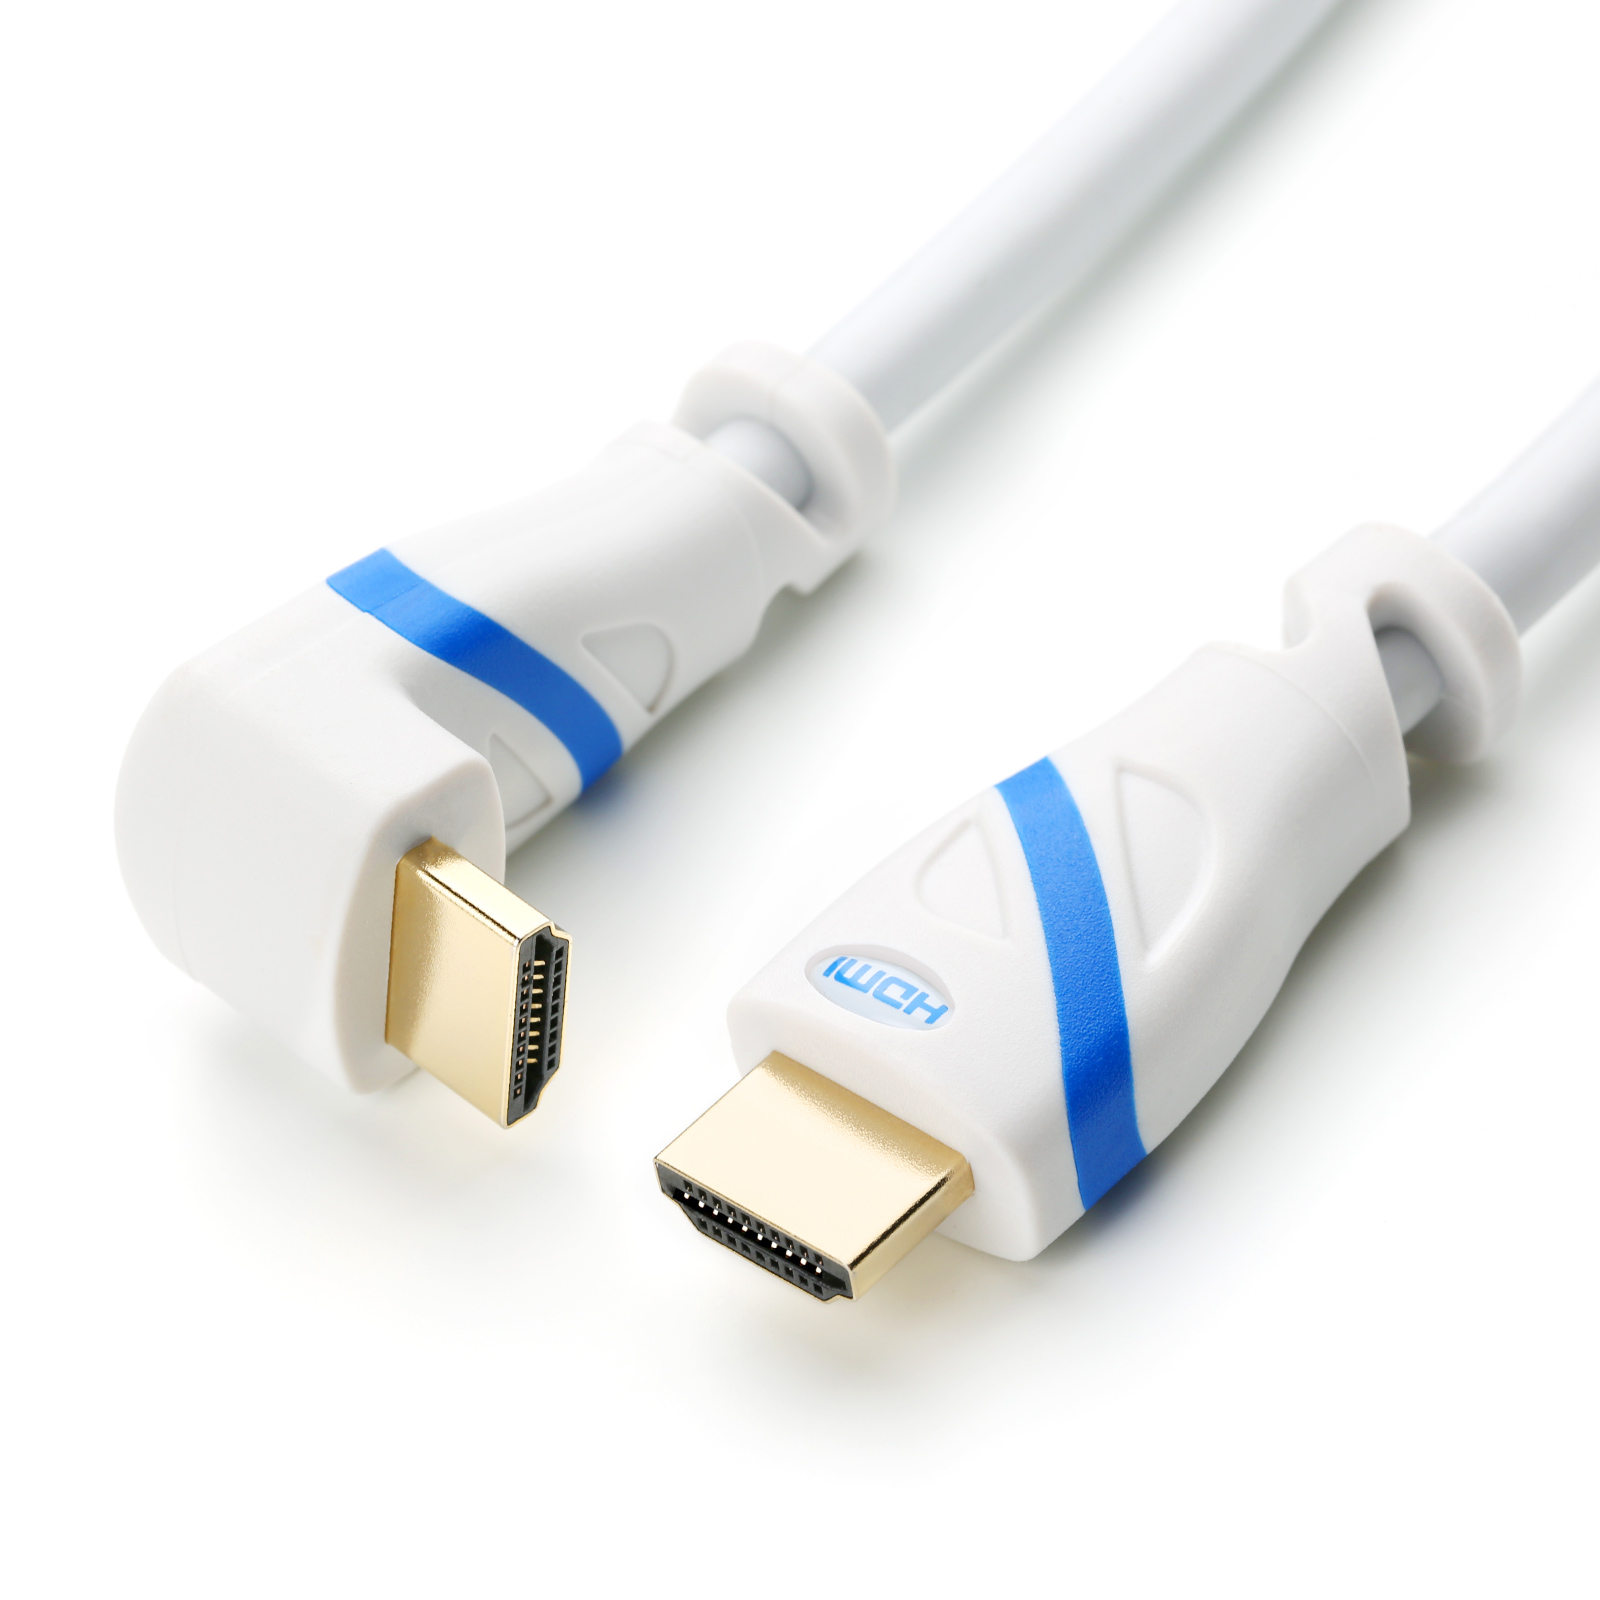 CSL HDMI Kabel, weiß/blau 5m gewinkelt, Kabel, 2.0 HDMI